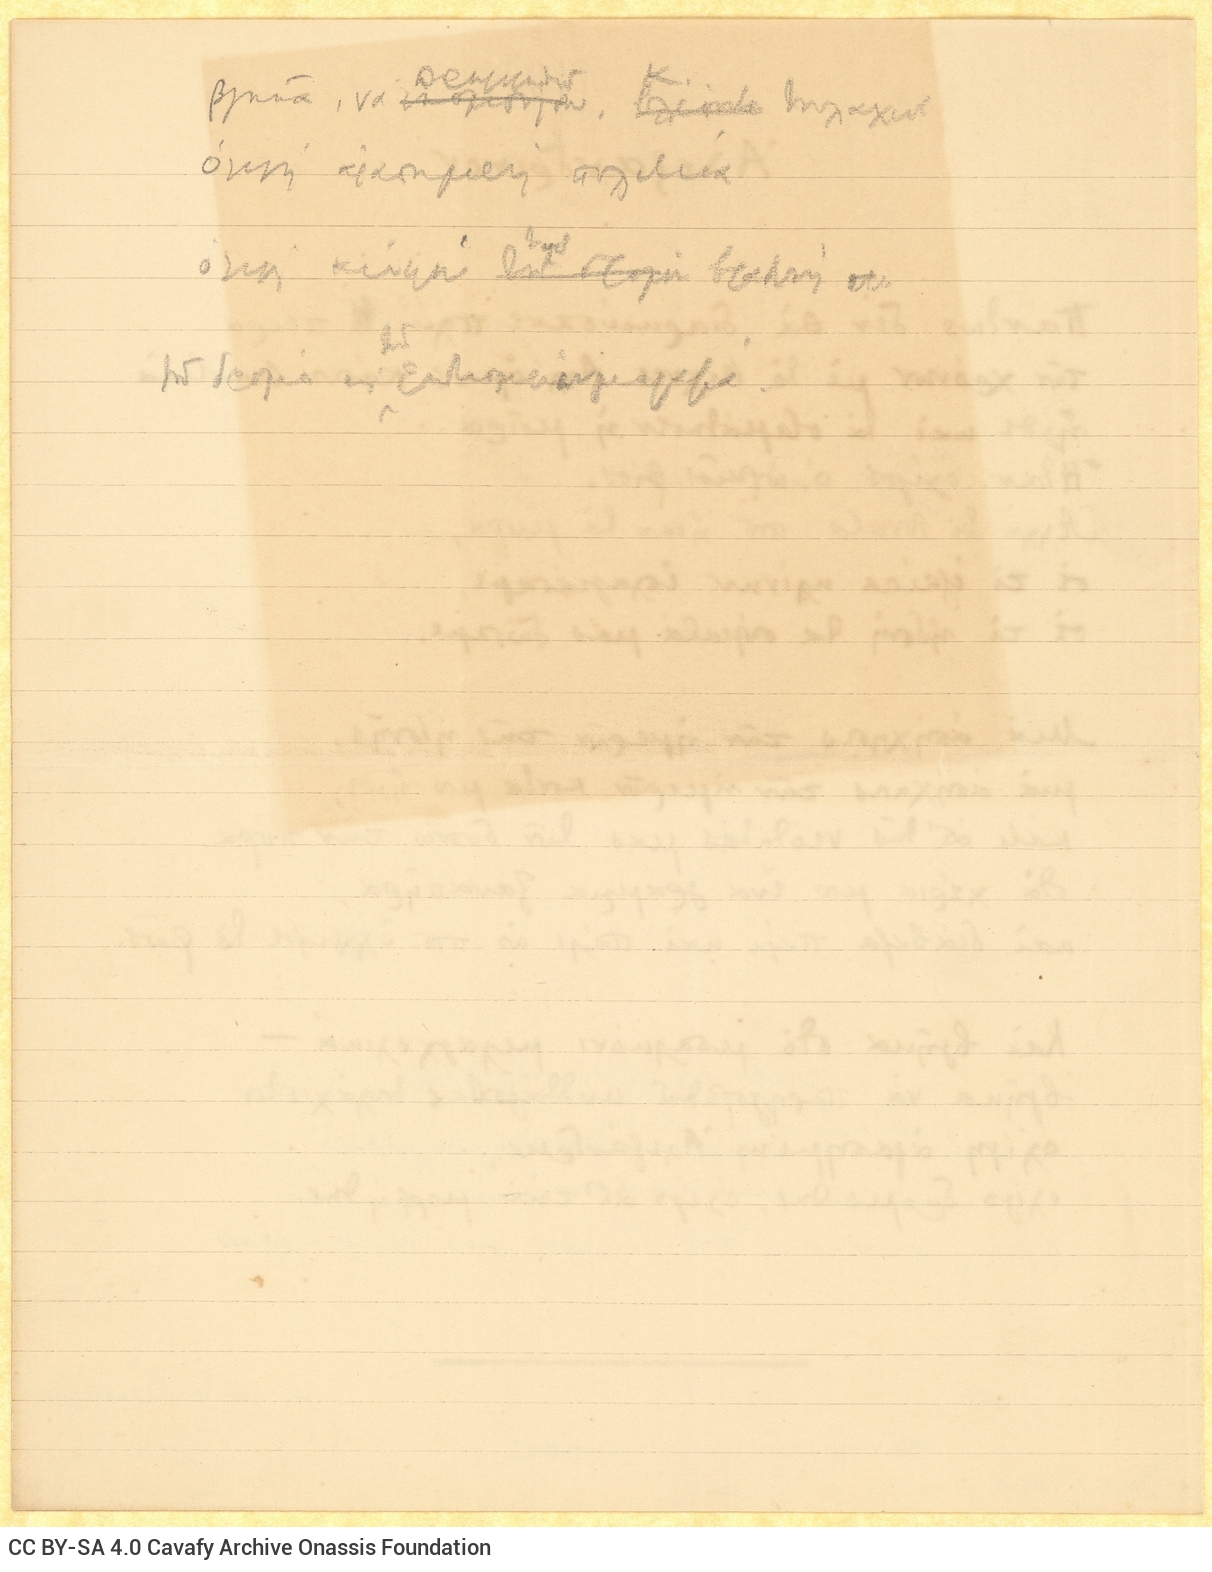 Χειρόγραφο του ποιήματος «Αλεξανδρινόν» στην πρώτη σελίδα διαγρα�